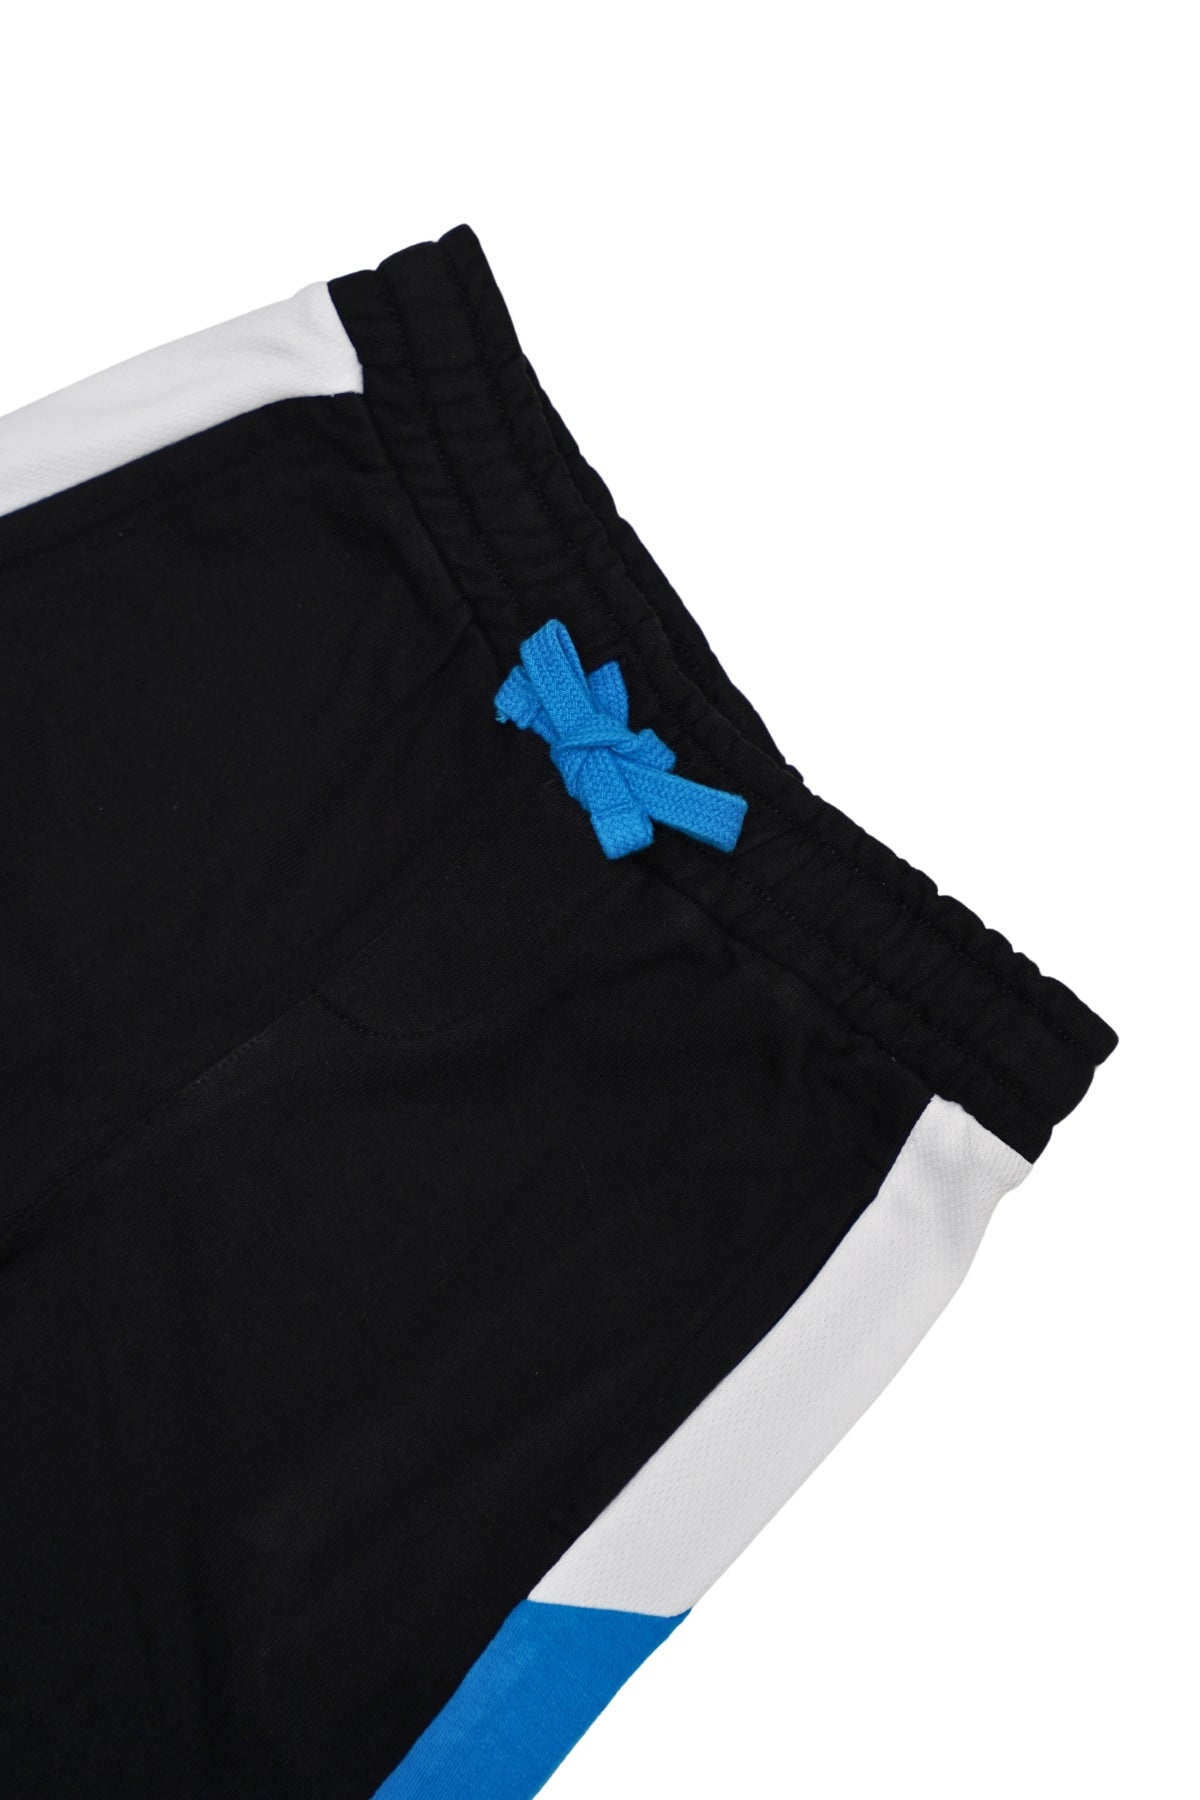 Athletic Shorts (SW-KS-013)